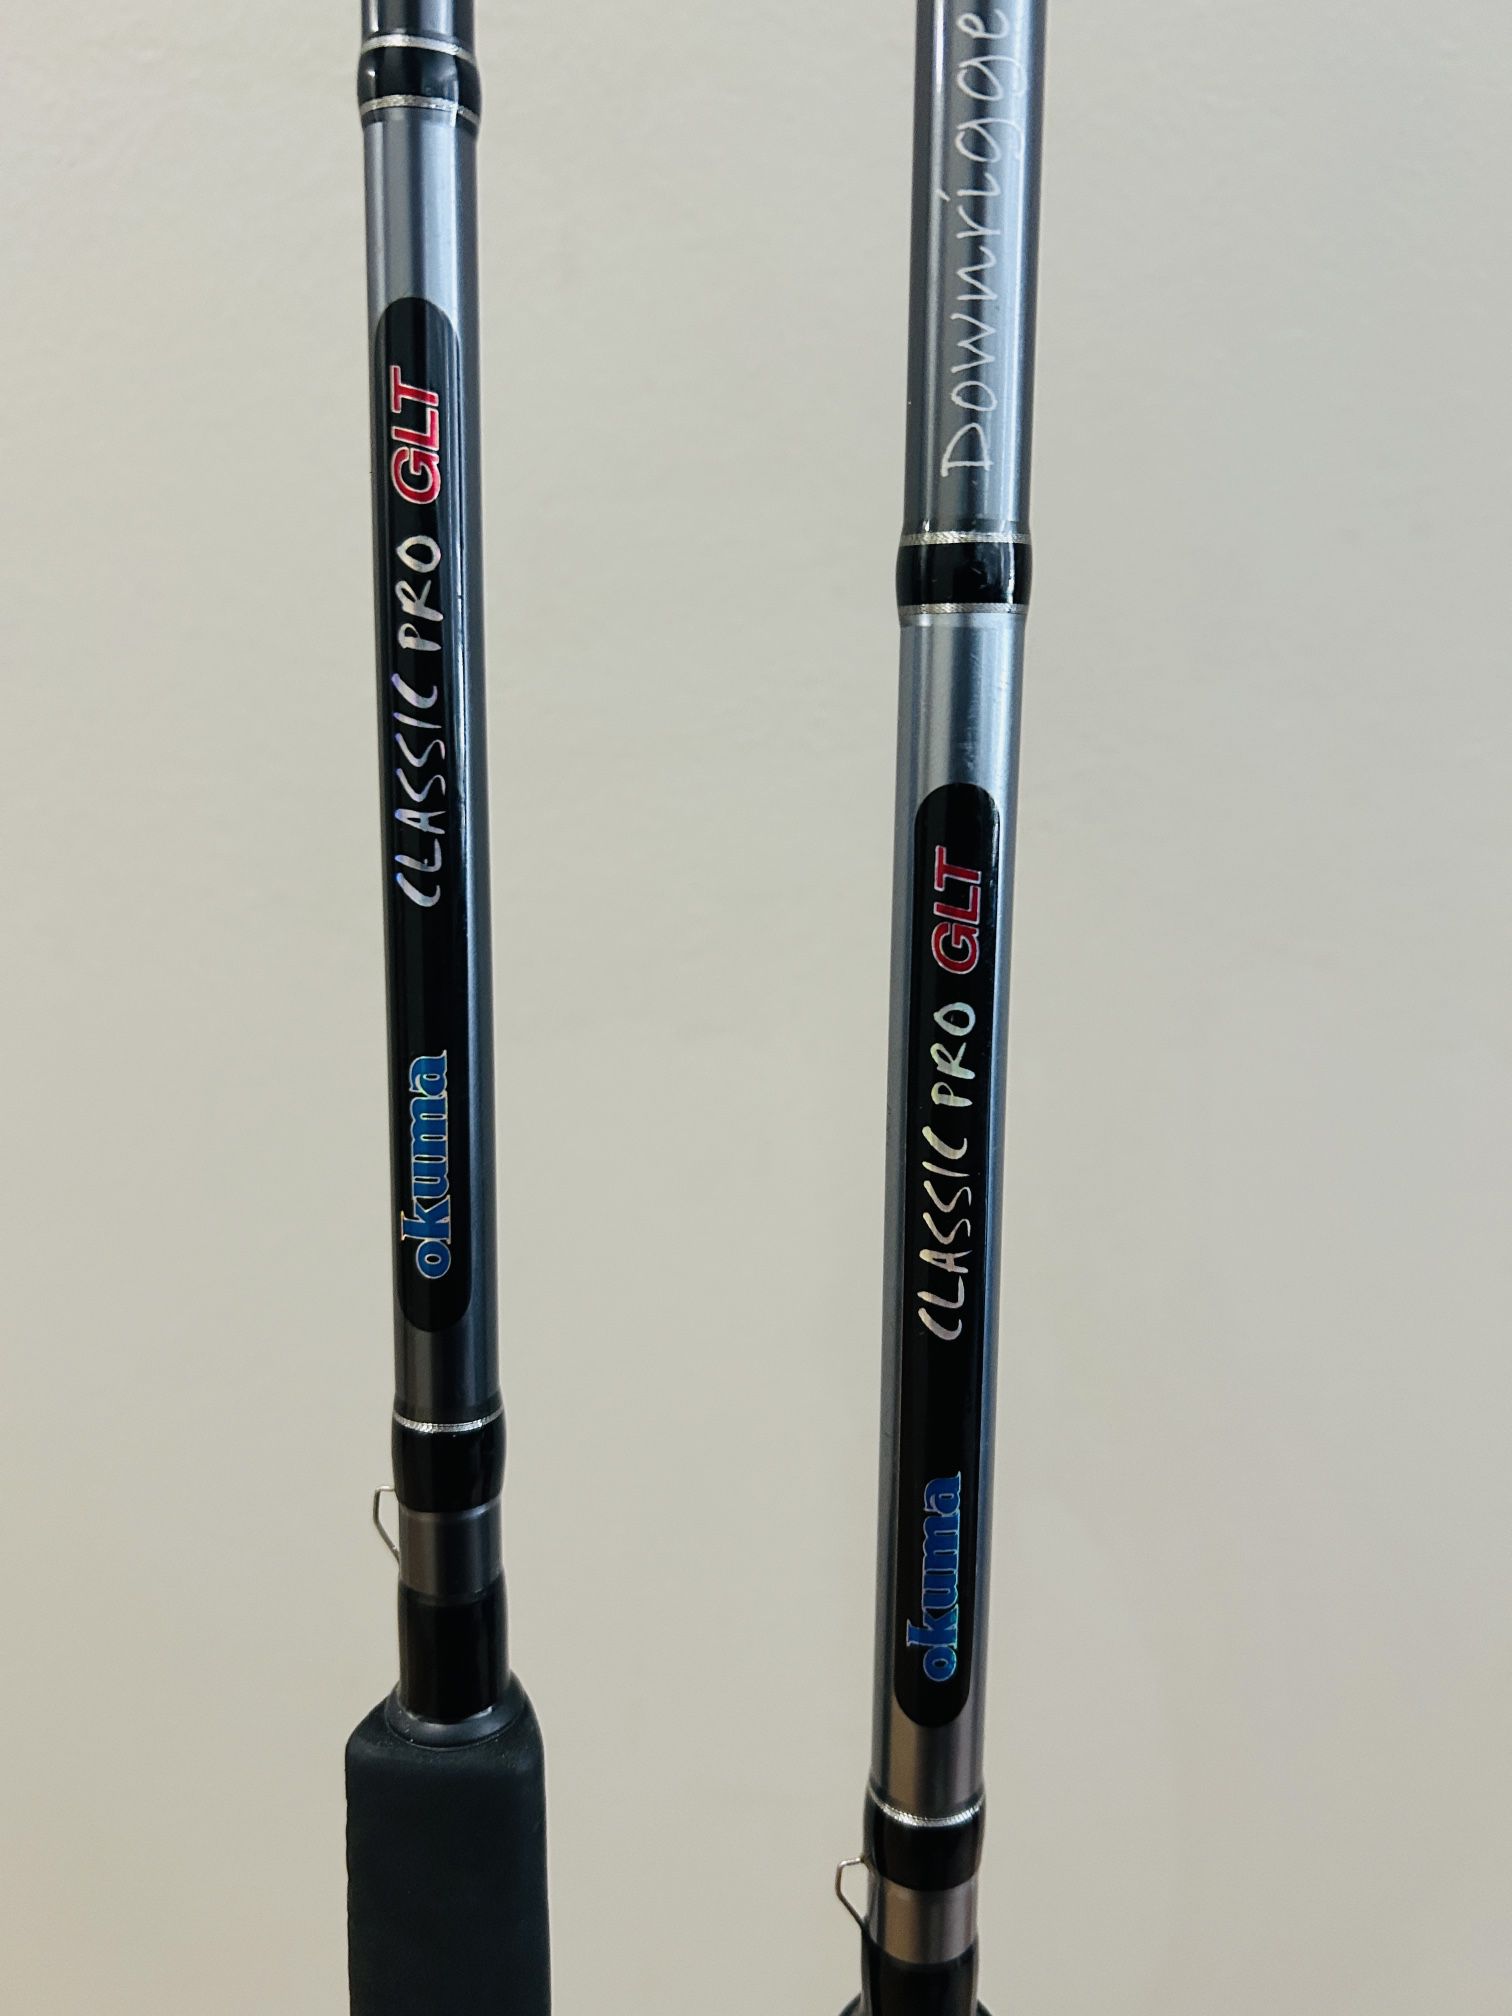 Okuma Classic Pro Glt Downrigger Rods 7’6” and 8’